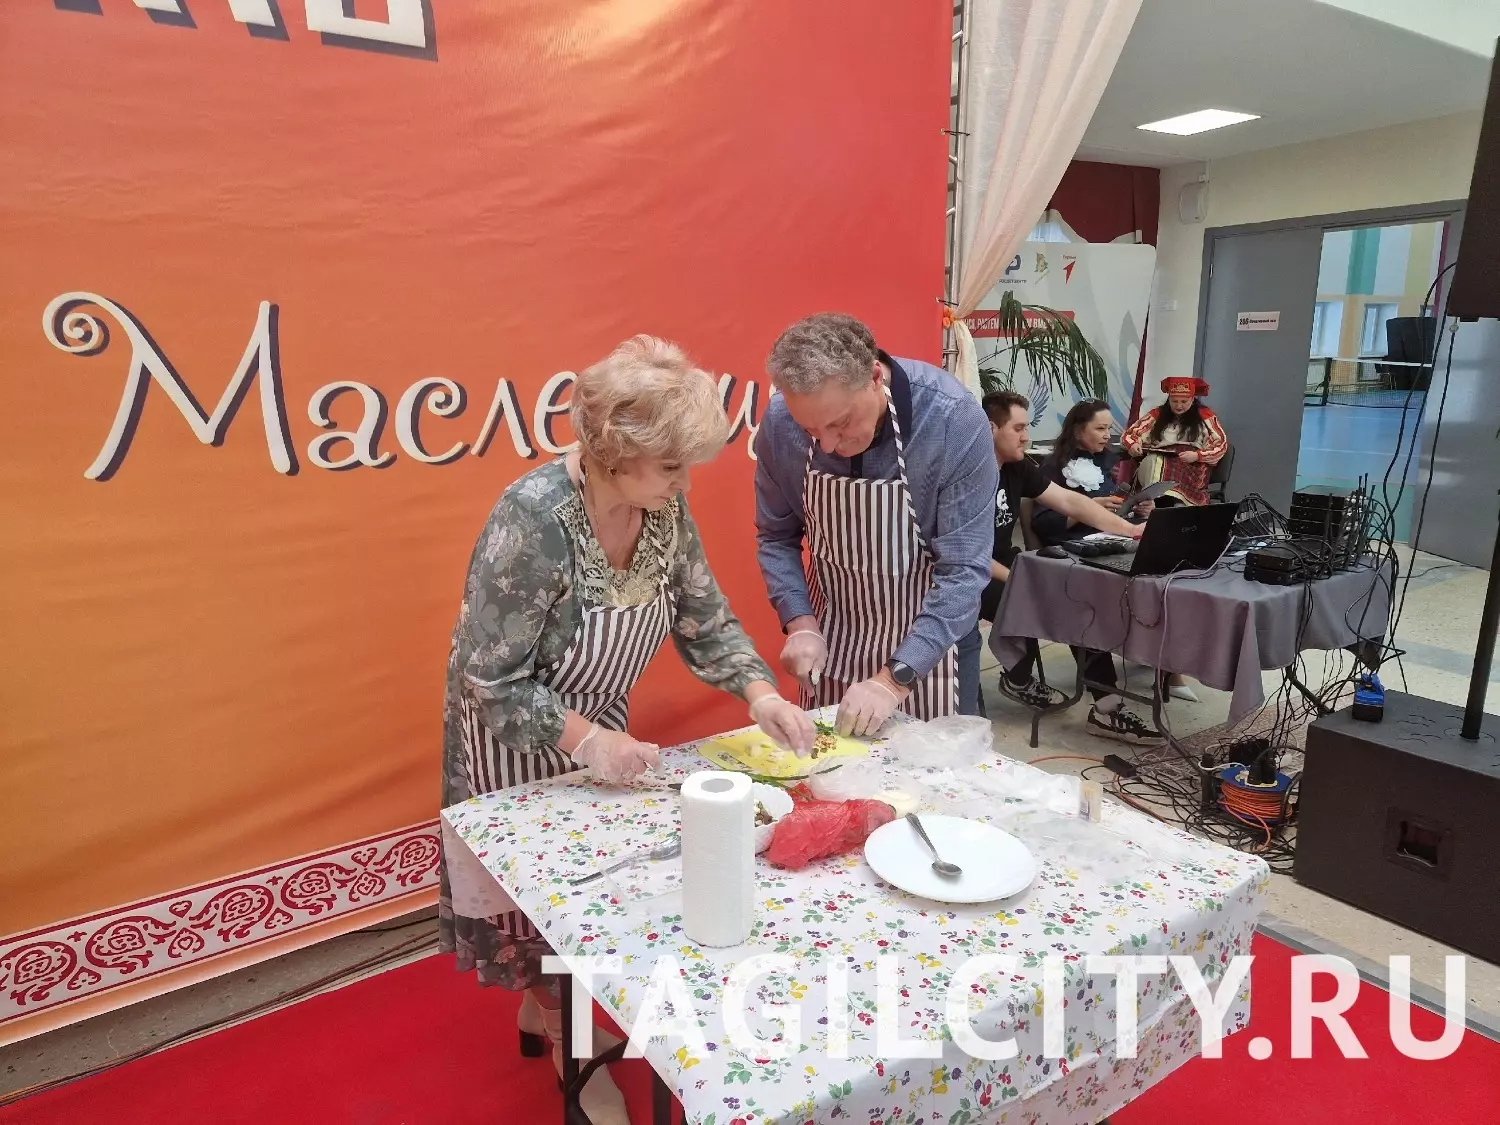 Мастер-класс по приготовлению блюд из блинов от организаторов фестиваля "Боярыня Масленица" в Нижнем Тагиле.